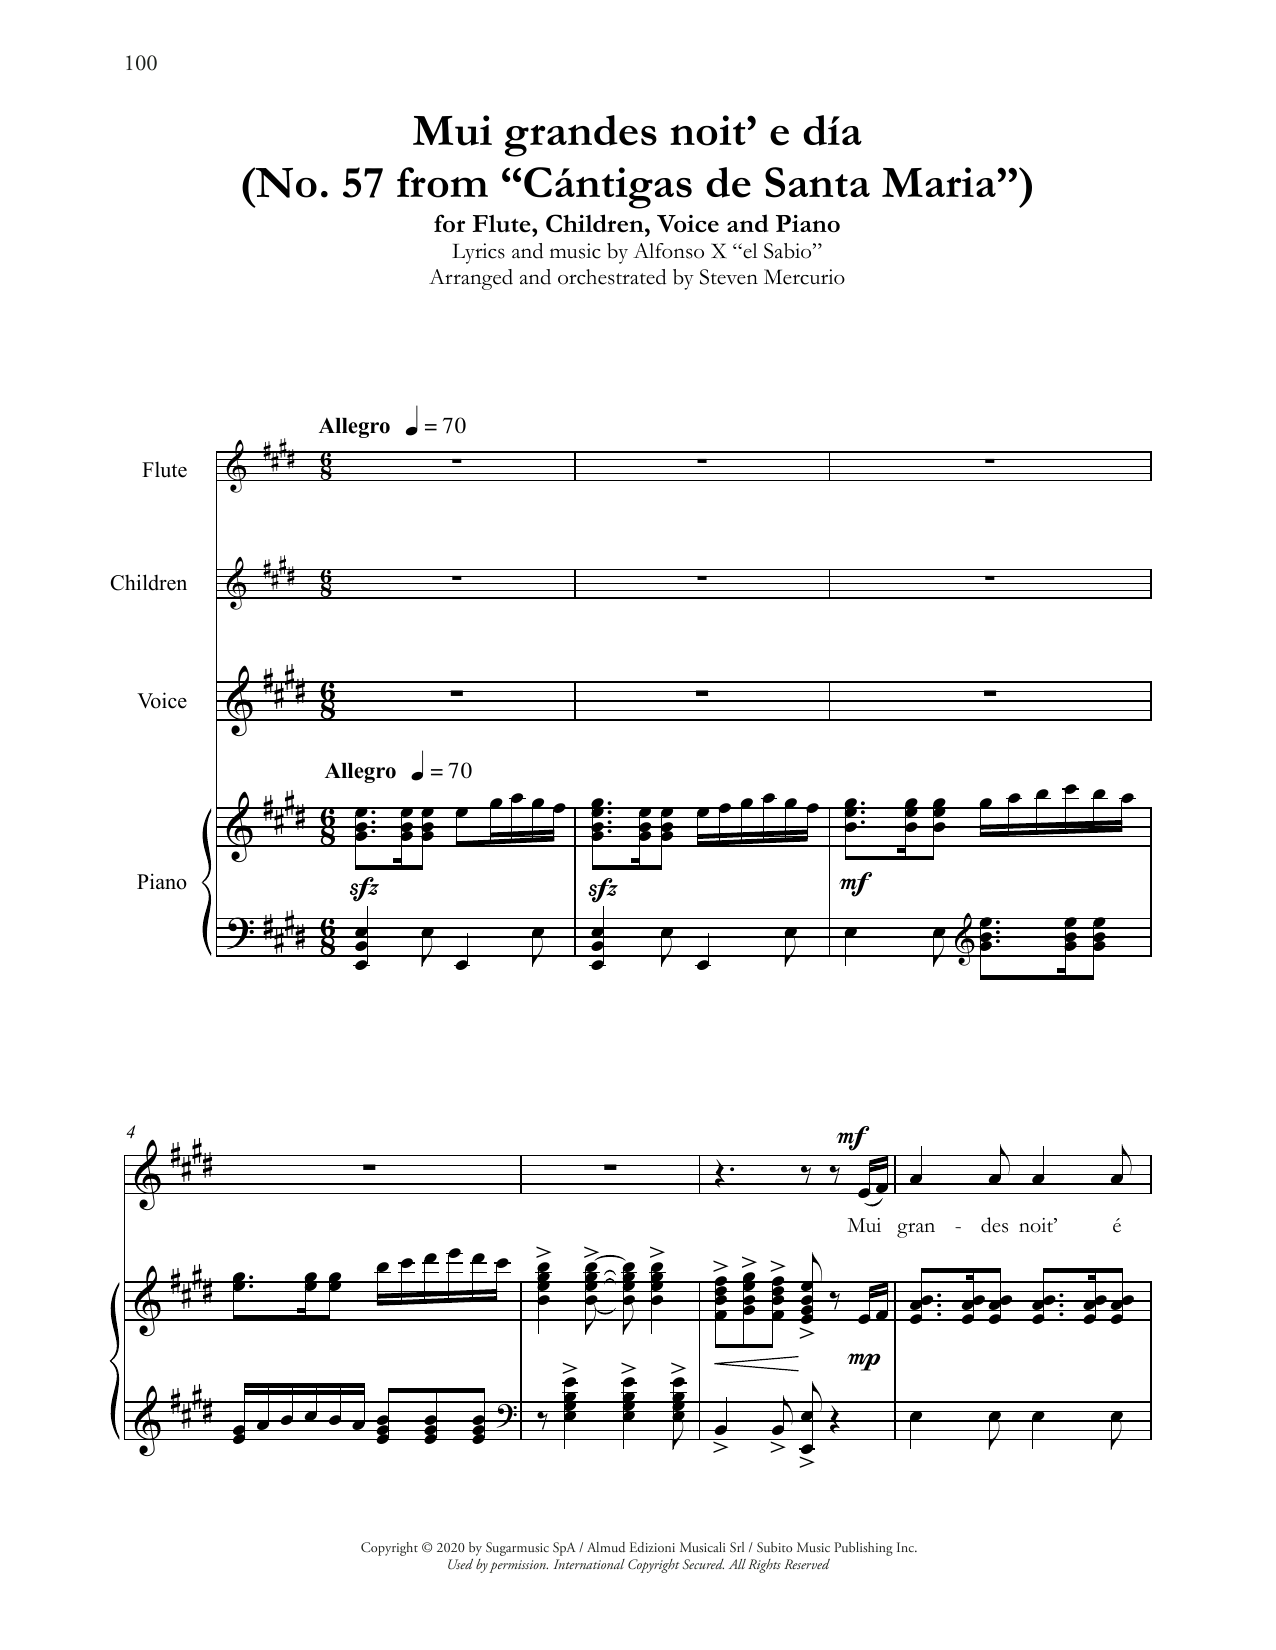 Andrea Bocelli Mui grandes noit' e día (No. 57 from Cántigas de Santa Maria) (arr. Steven Mercurio) Sheet Music Notes & Chords for Piano & Vocal - Download or Print PDF